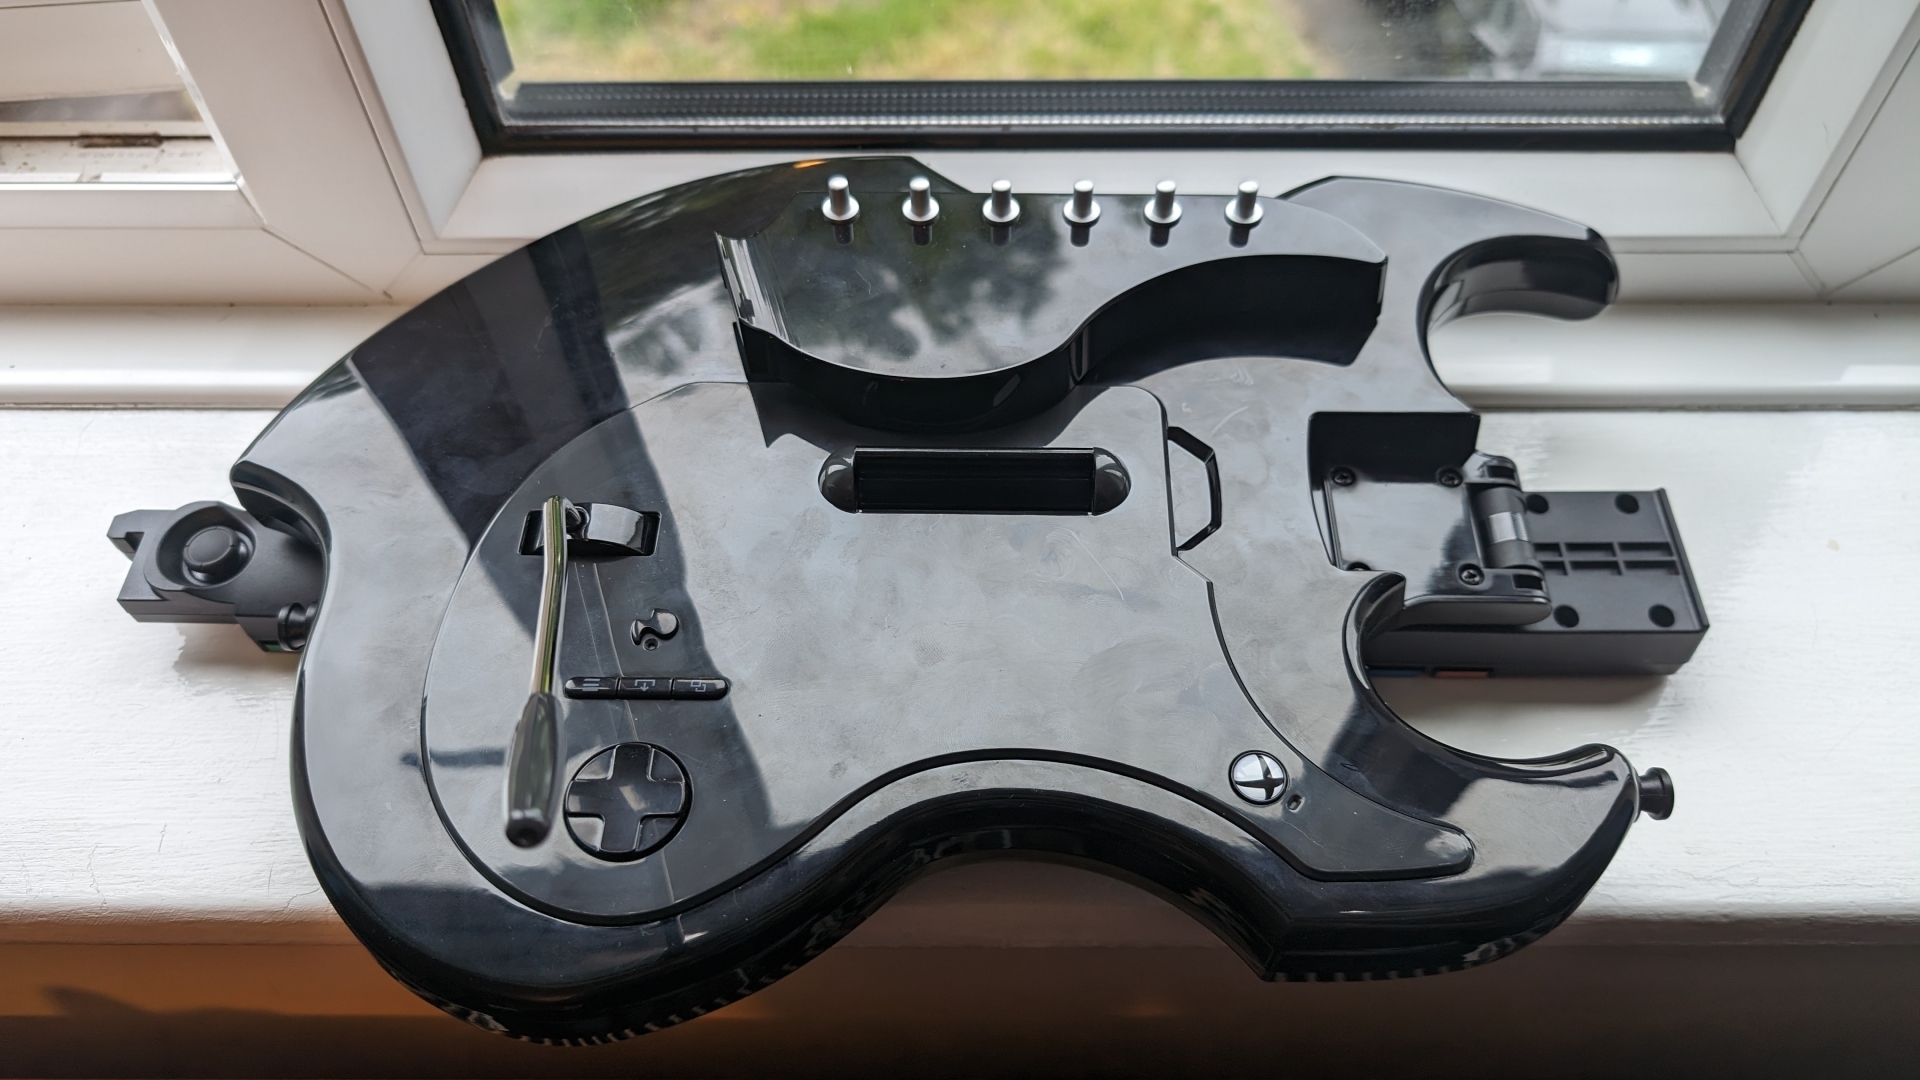 PDP Riffmaster Gitar Kontrolcüsü inceleme görüntüsünde, kontrolcünün pencere kenarında katlanmış hali gösteriliyor.